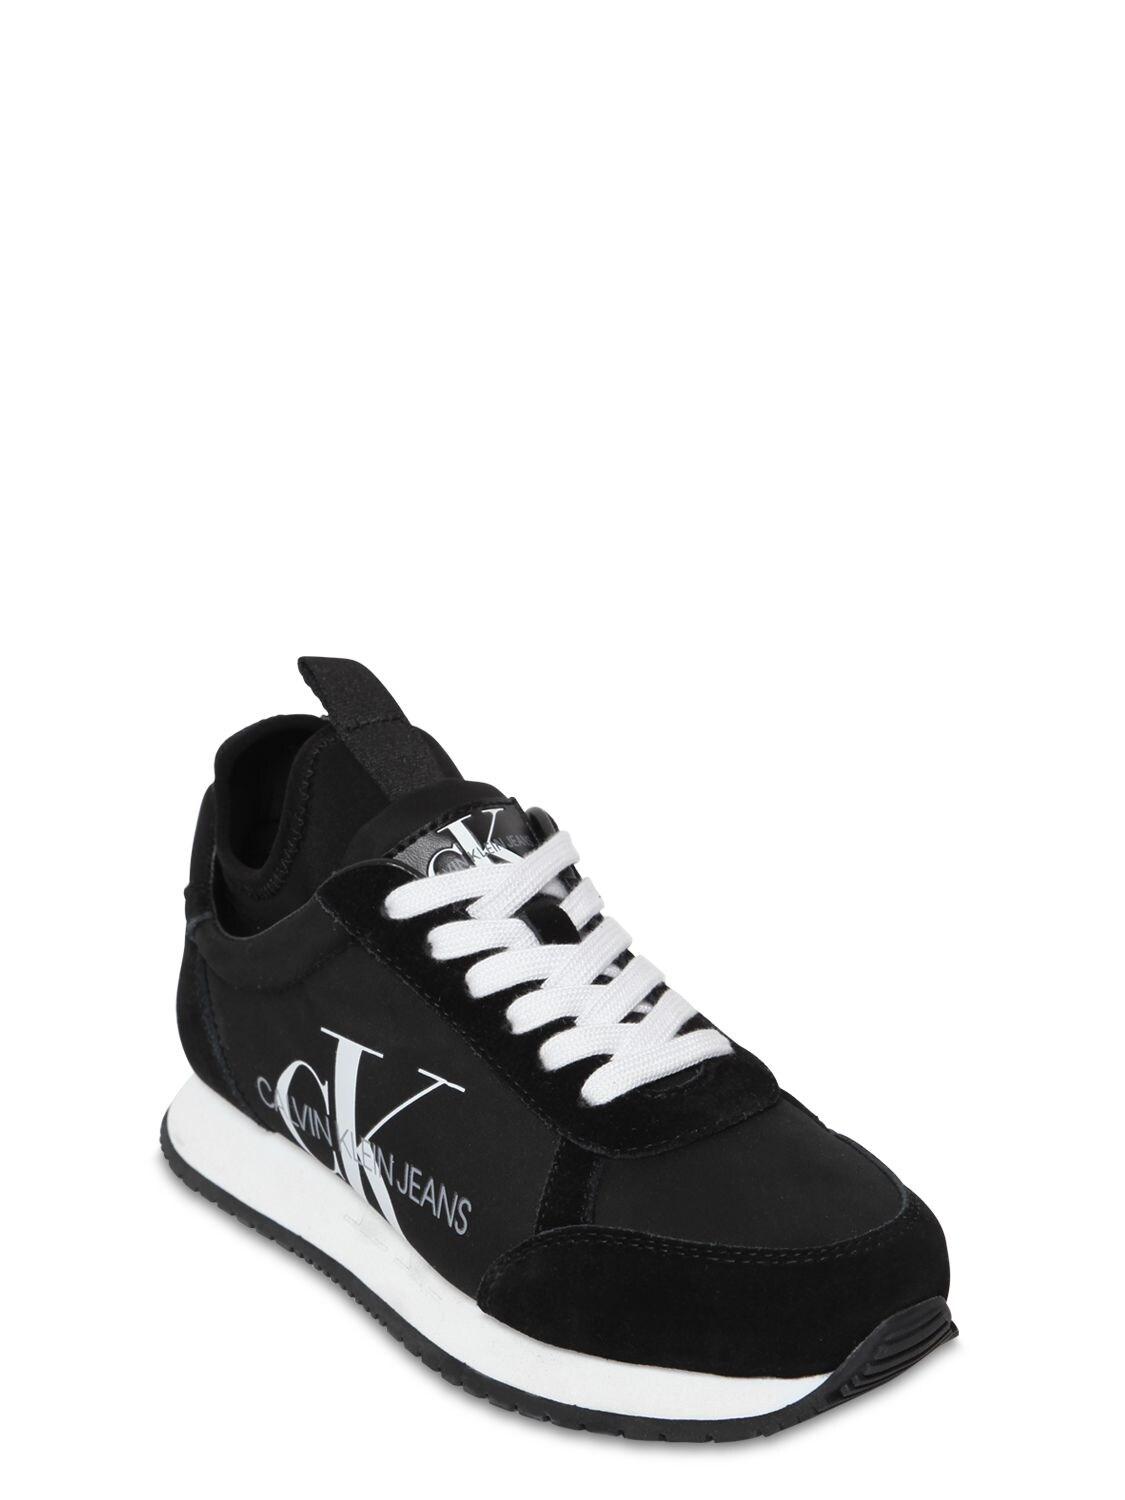 Actualizar 89+ imagen calvin klein mabon nylon sneakers - Giaoduchtn.edu.vn